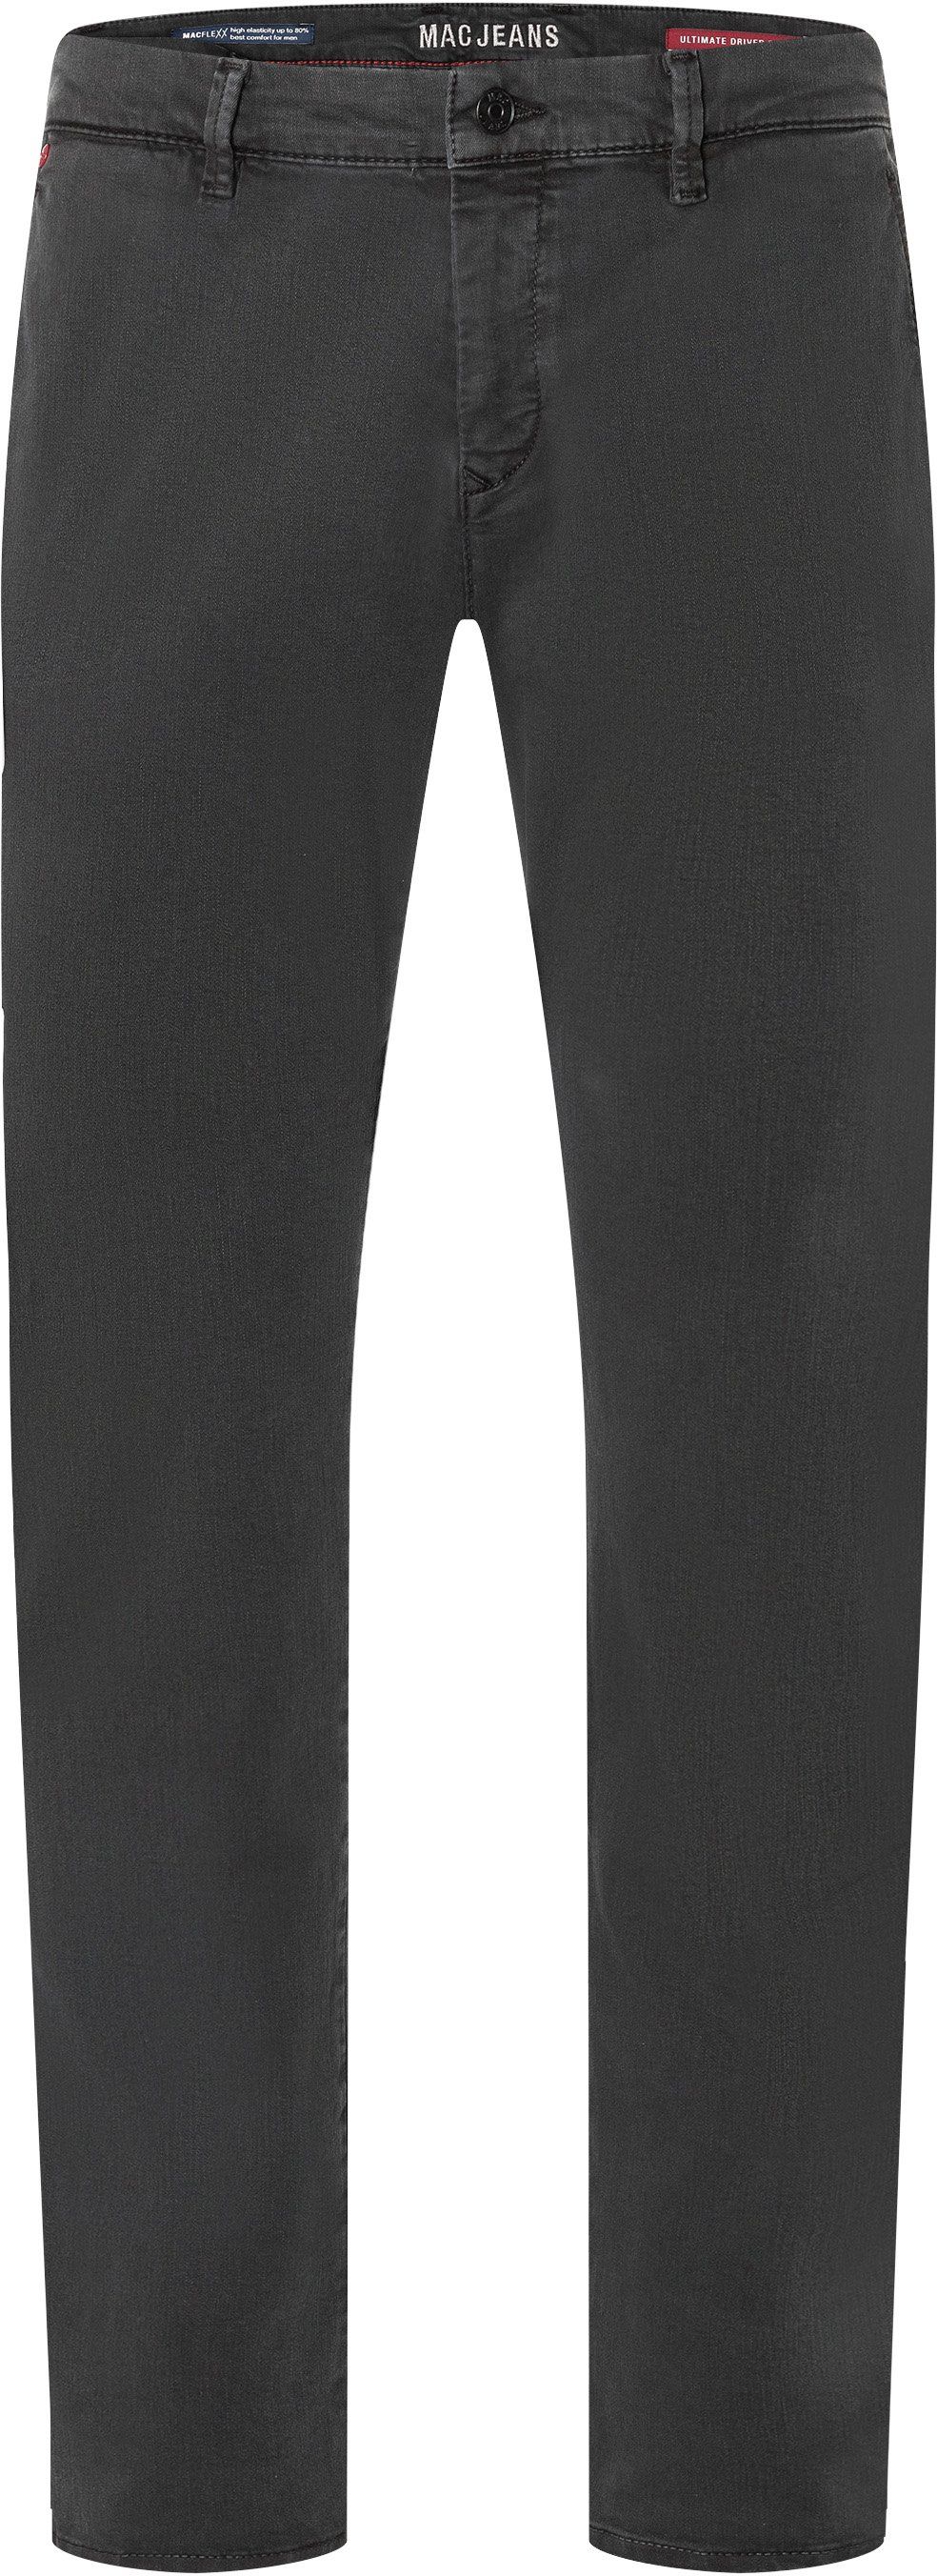 Mac Jeans Flexx Anthracite Dark Grey Grey size W 31